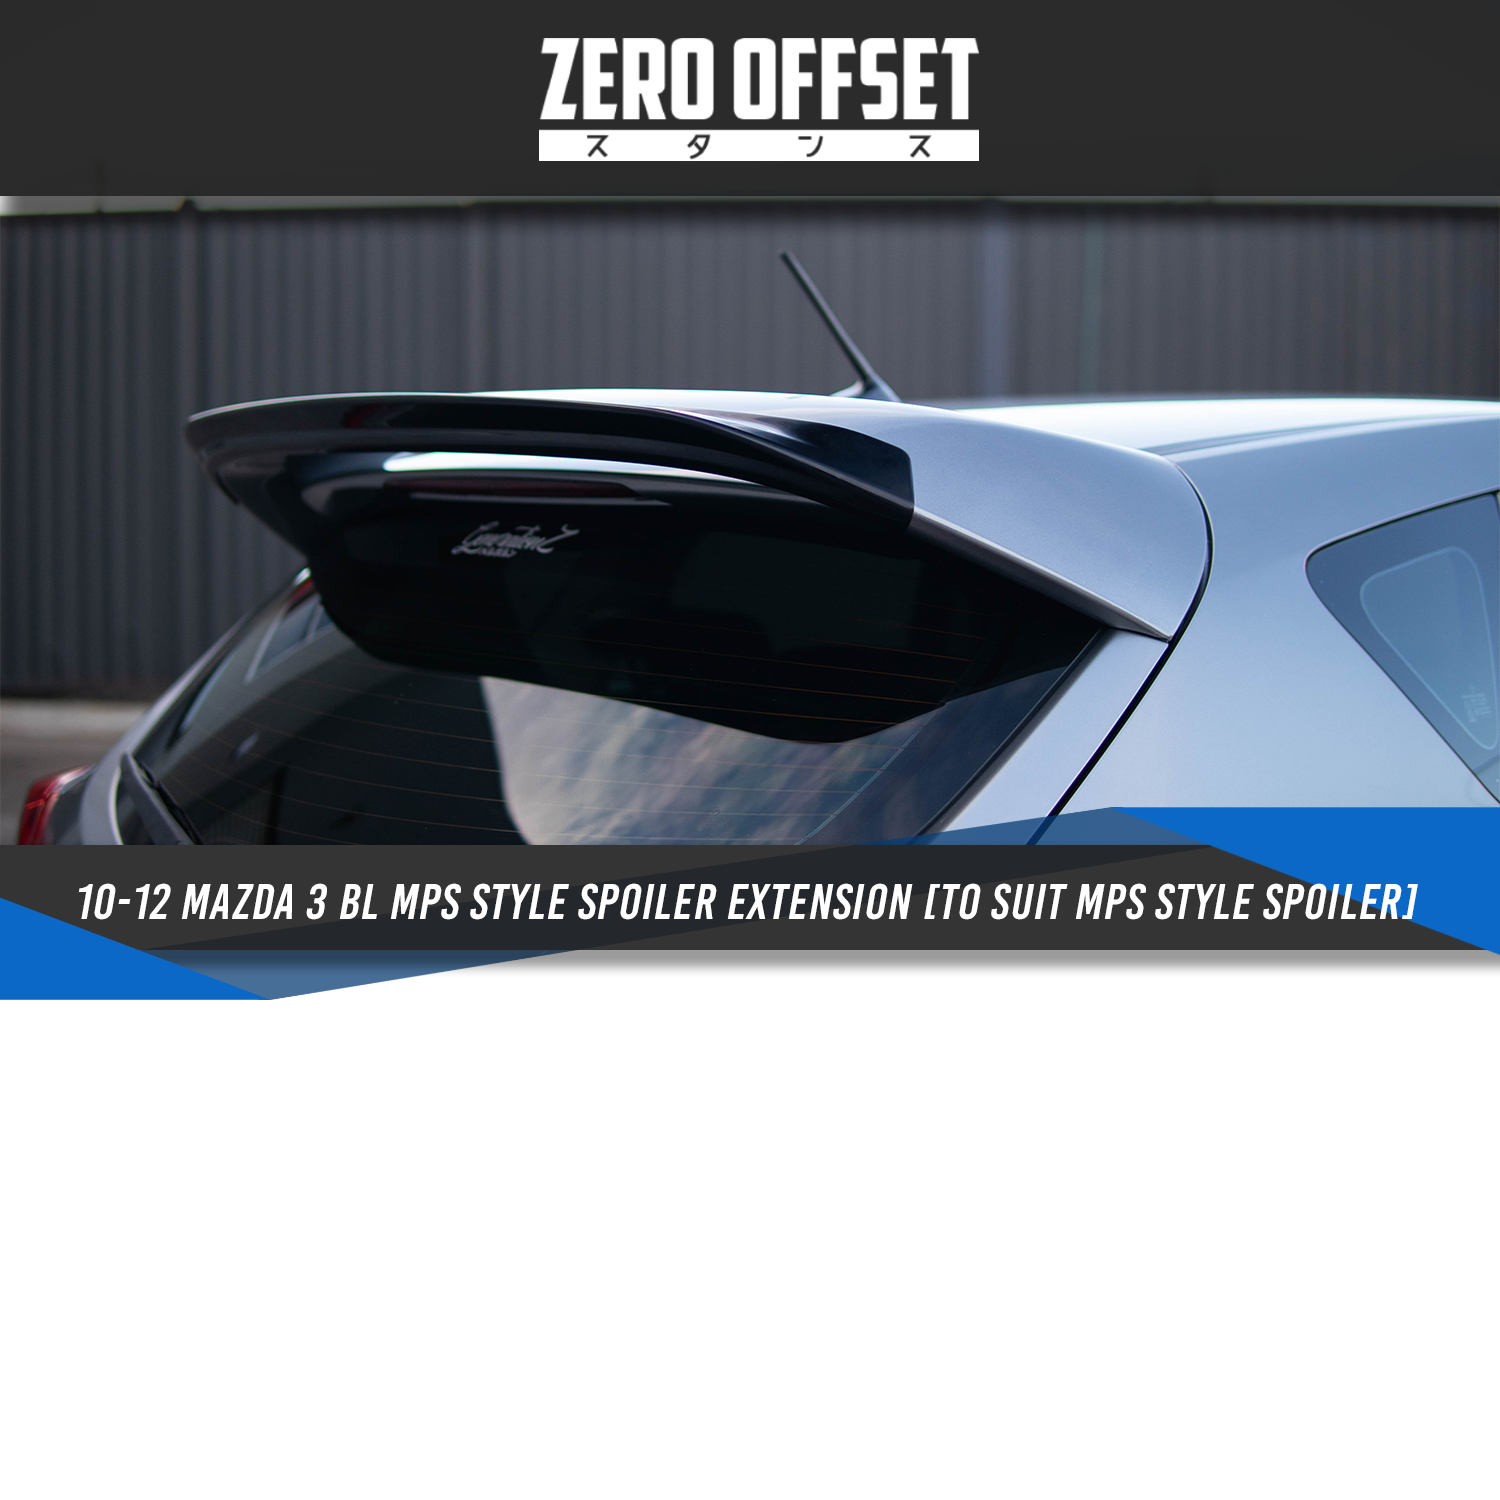 Zero Offset MP Spoiler Extension Gurney Flap pour 10-12 Mazda 3 BL (Suits  MPS Spoiler)